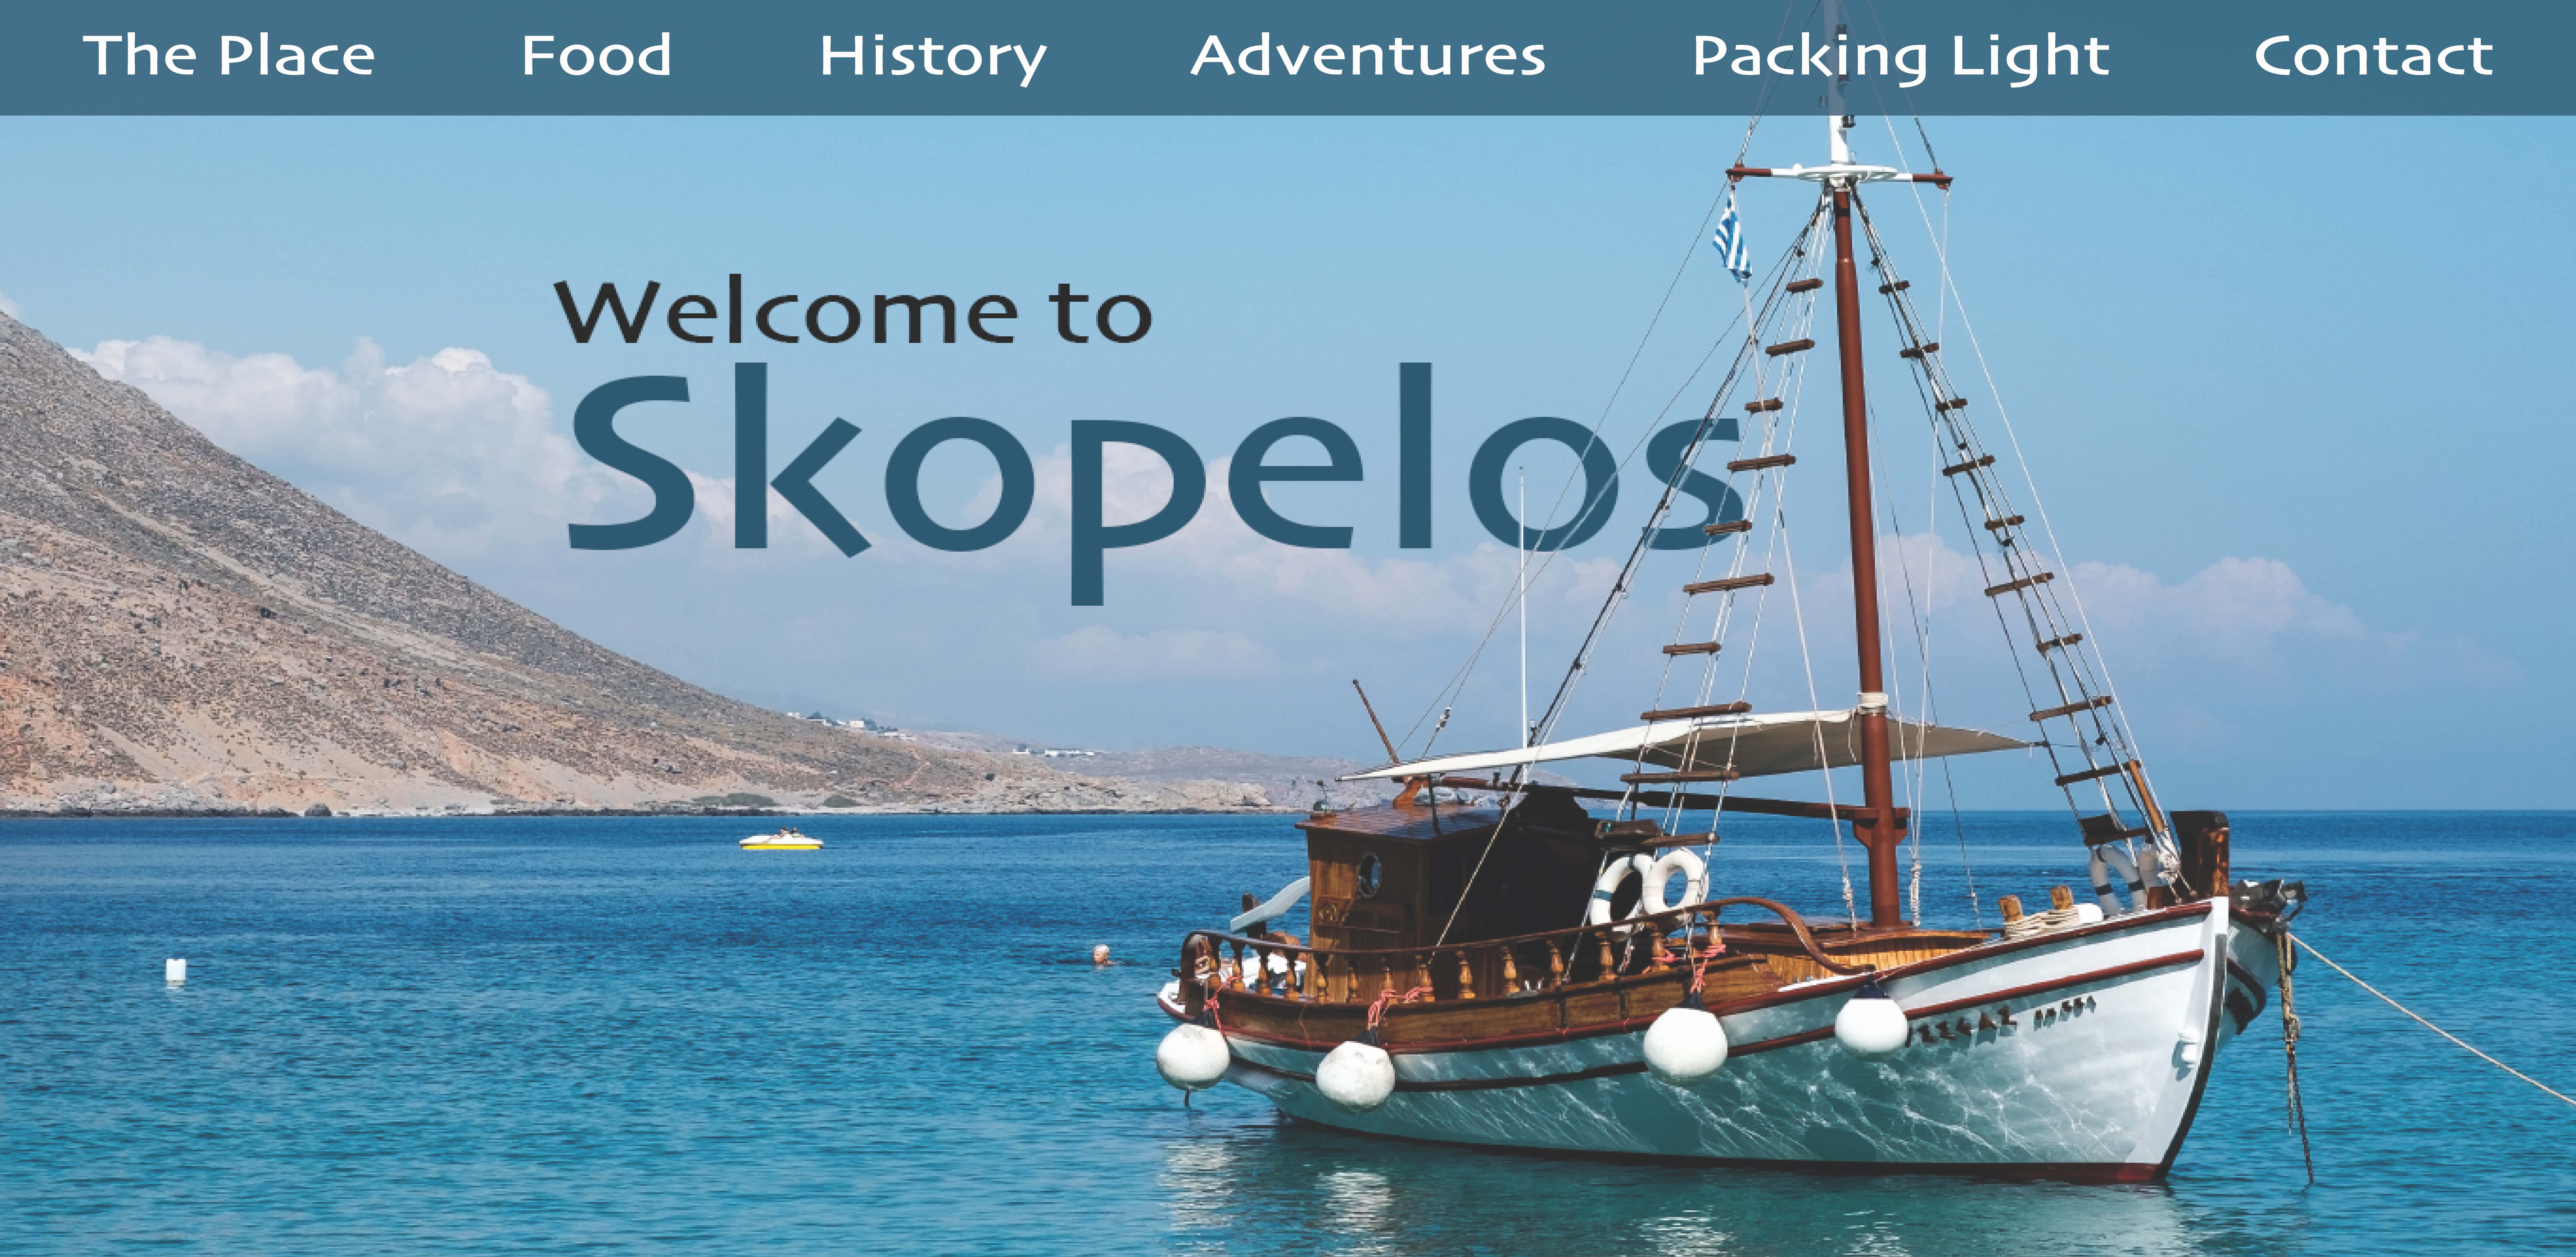 Skopelos travel brochure page 1